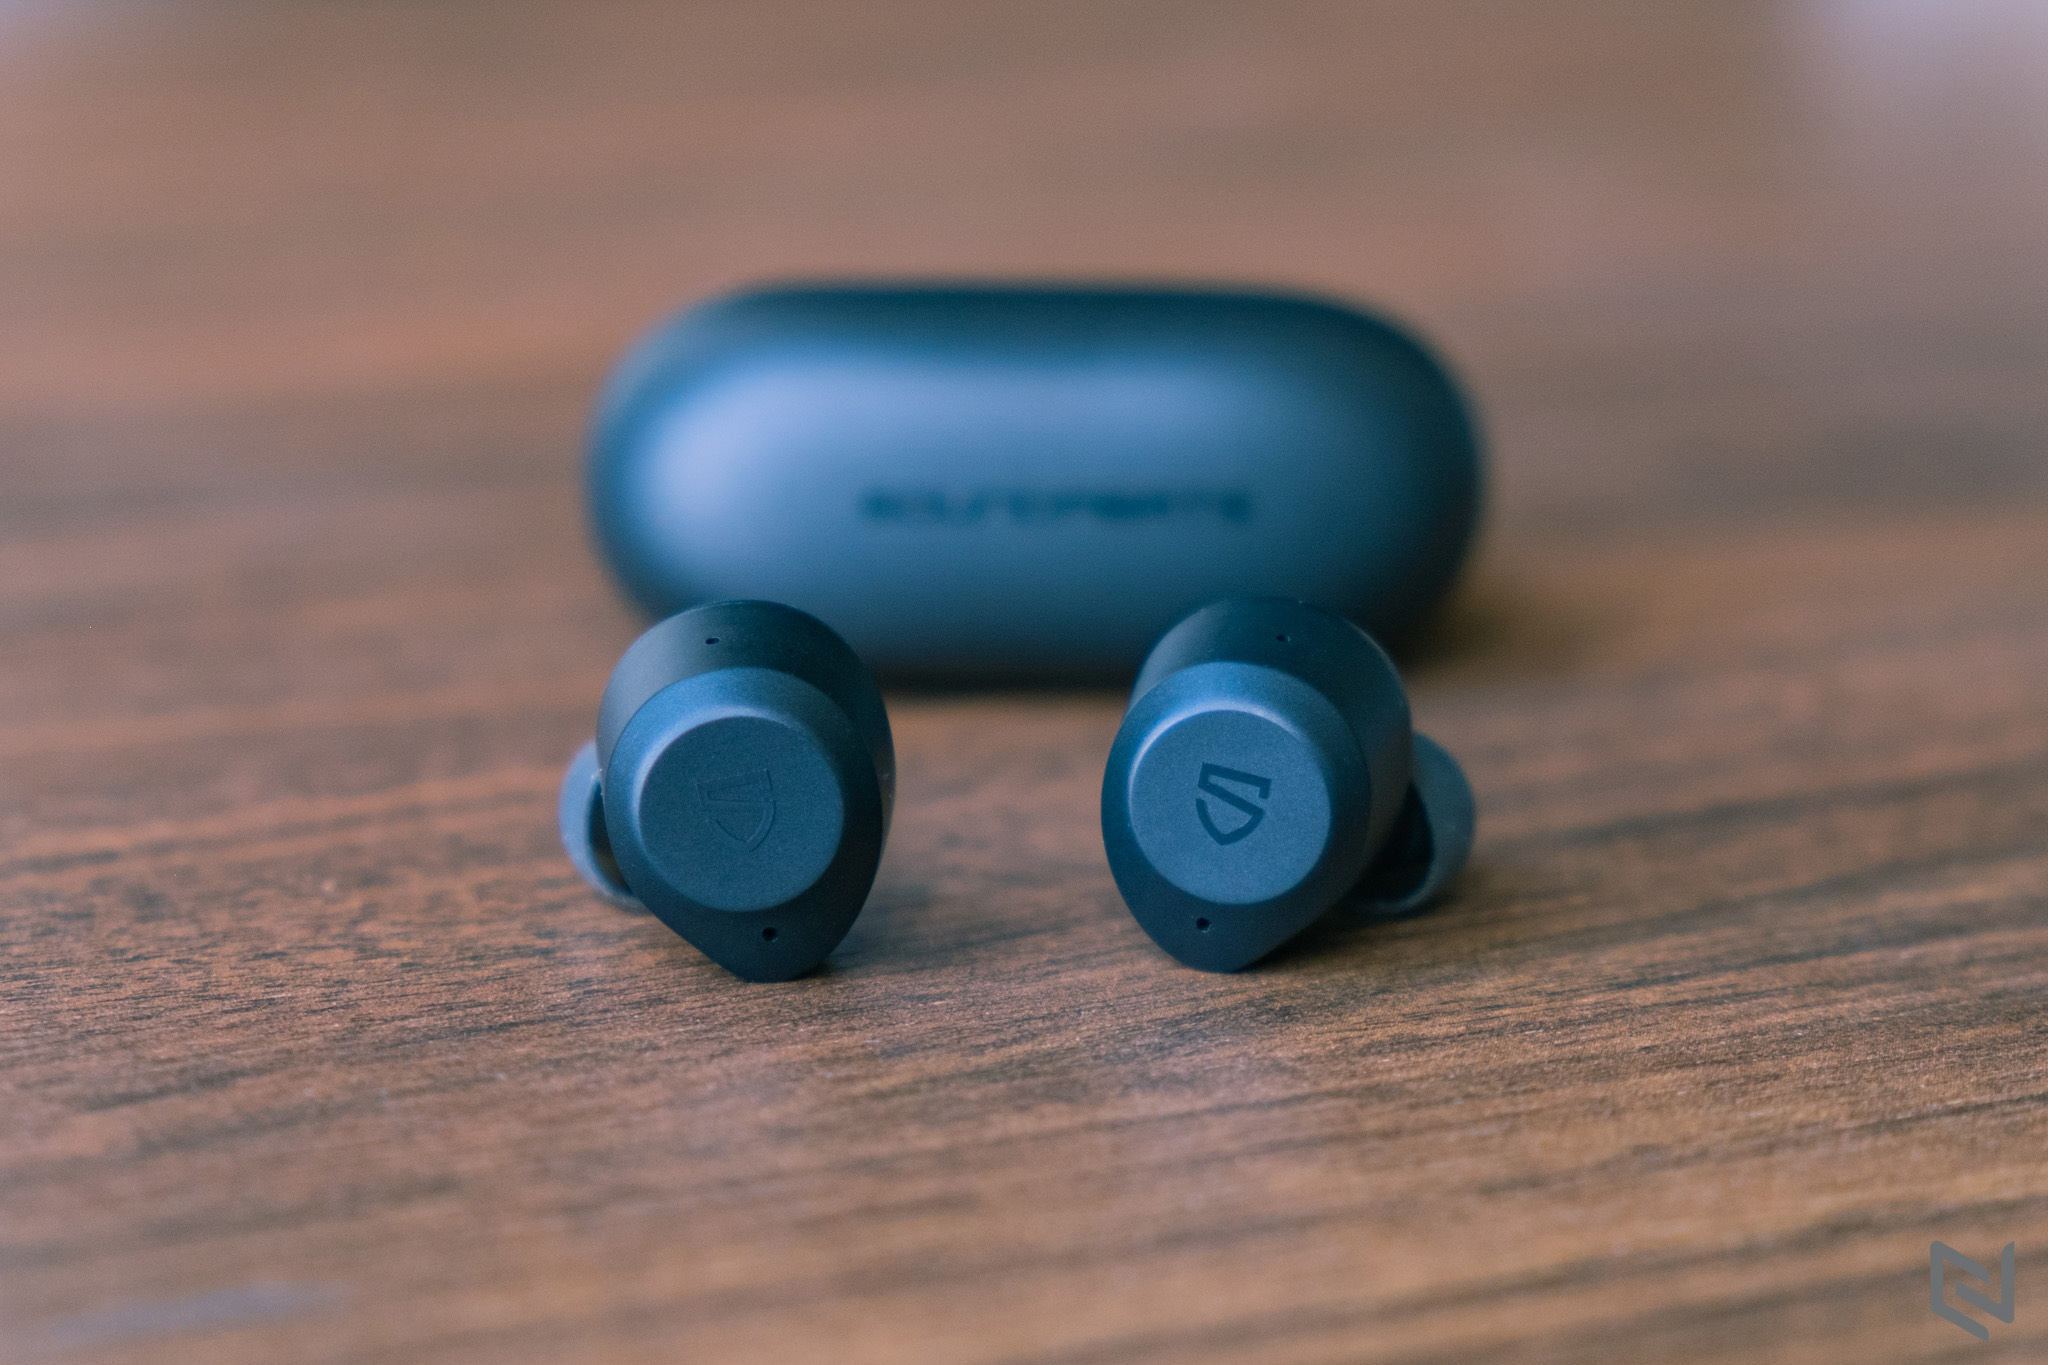 Đánh giá tai nghe Soundpeats T2, tai nghe không dây có chống ồn ANC giá rẻ nhất hiện tại